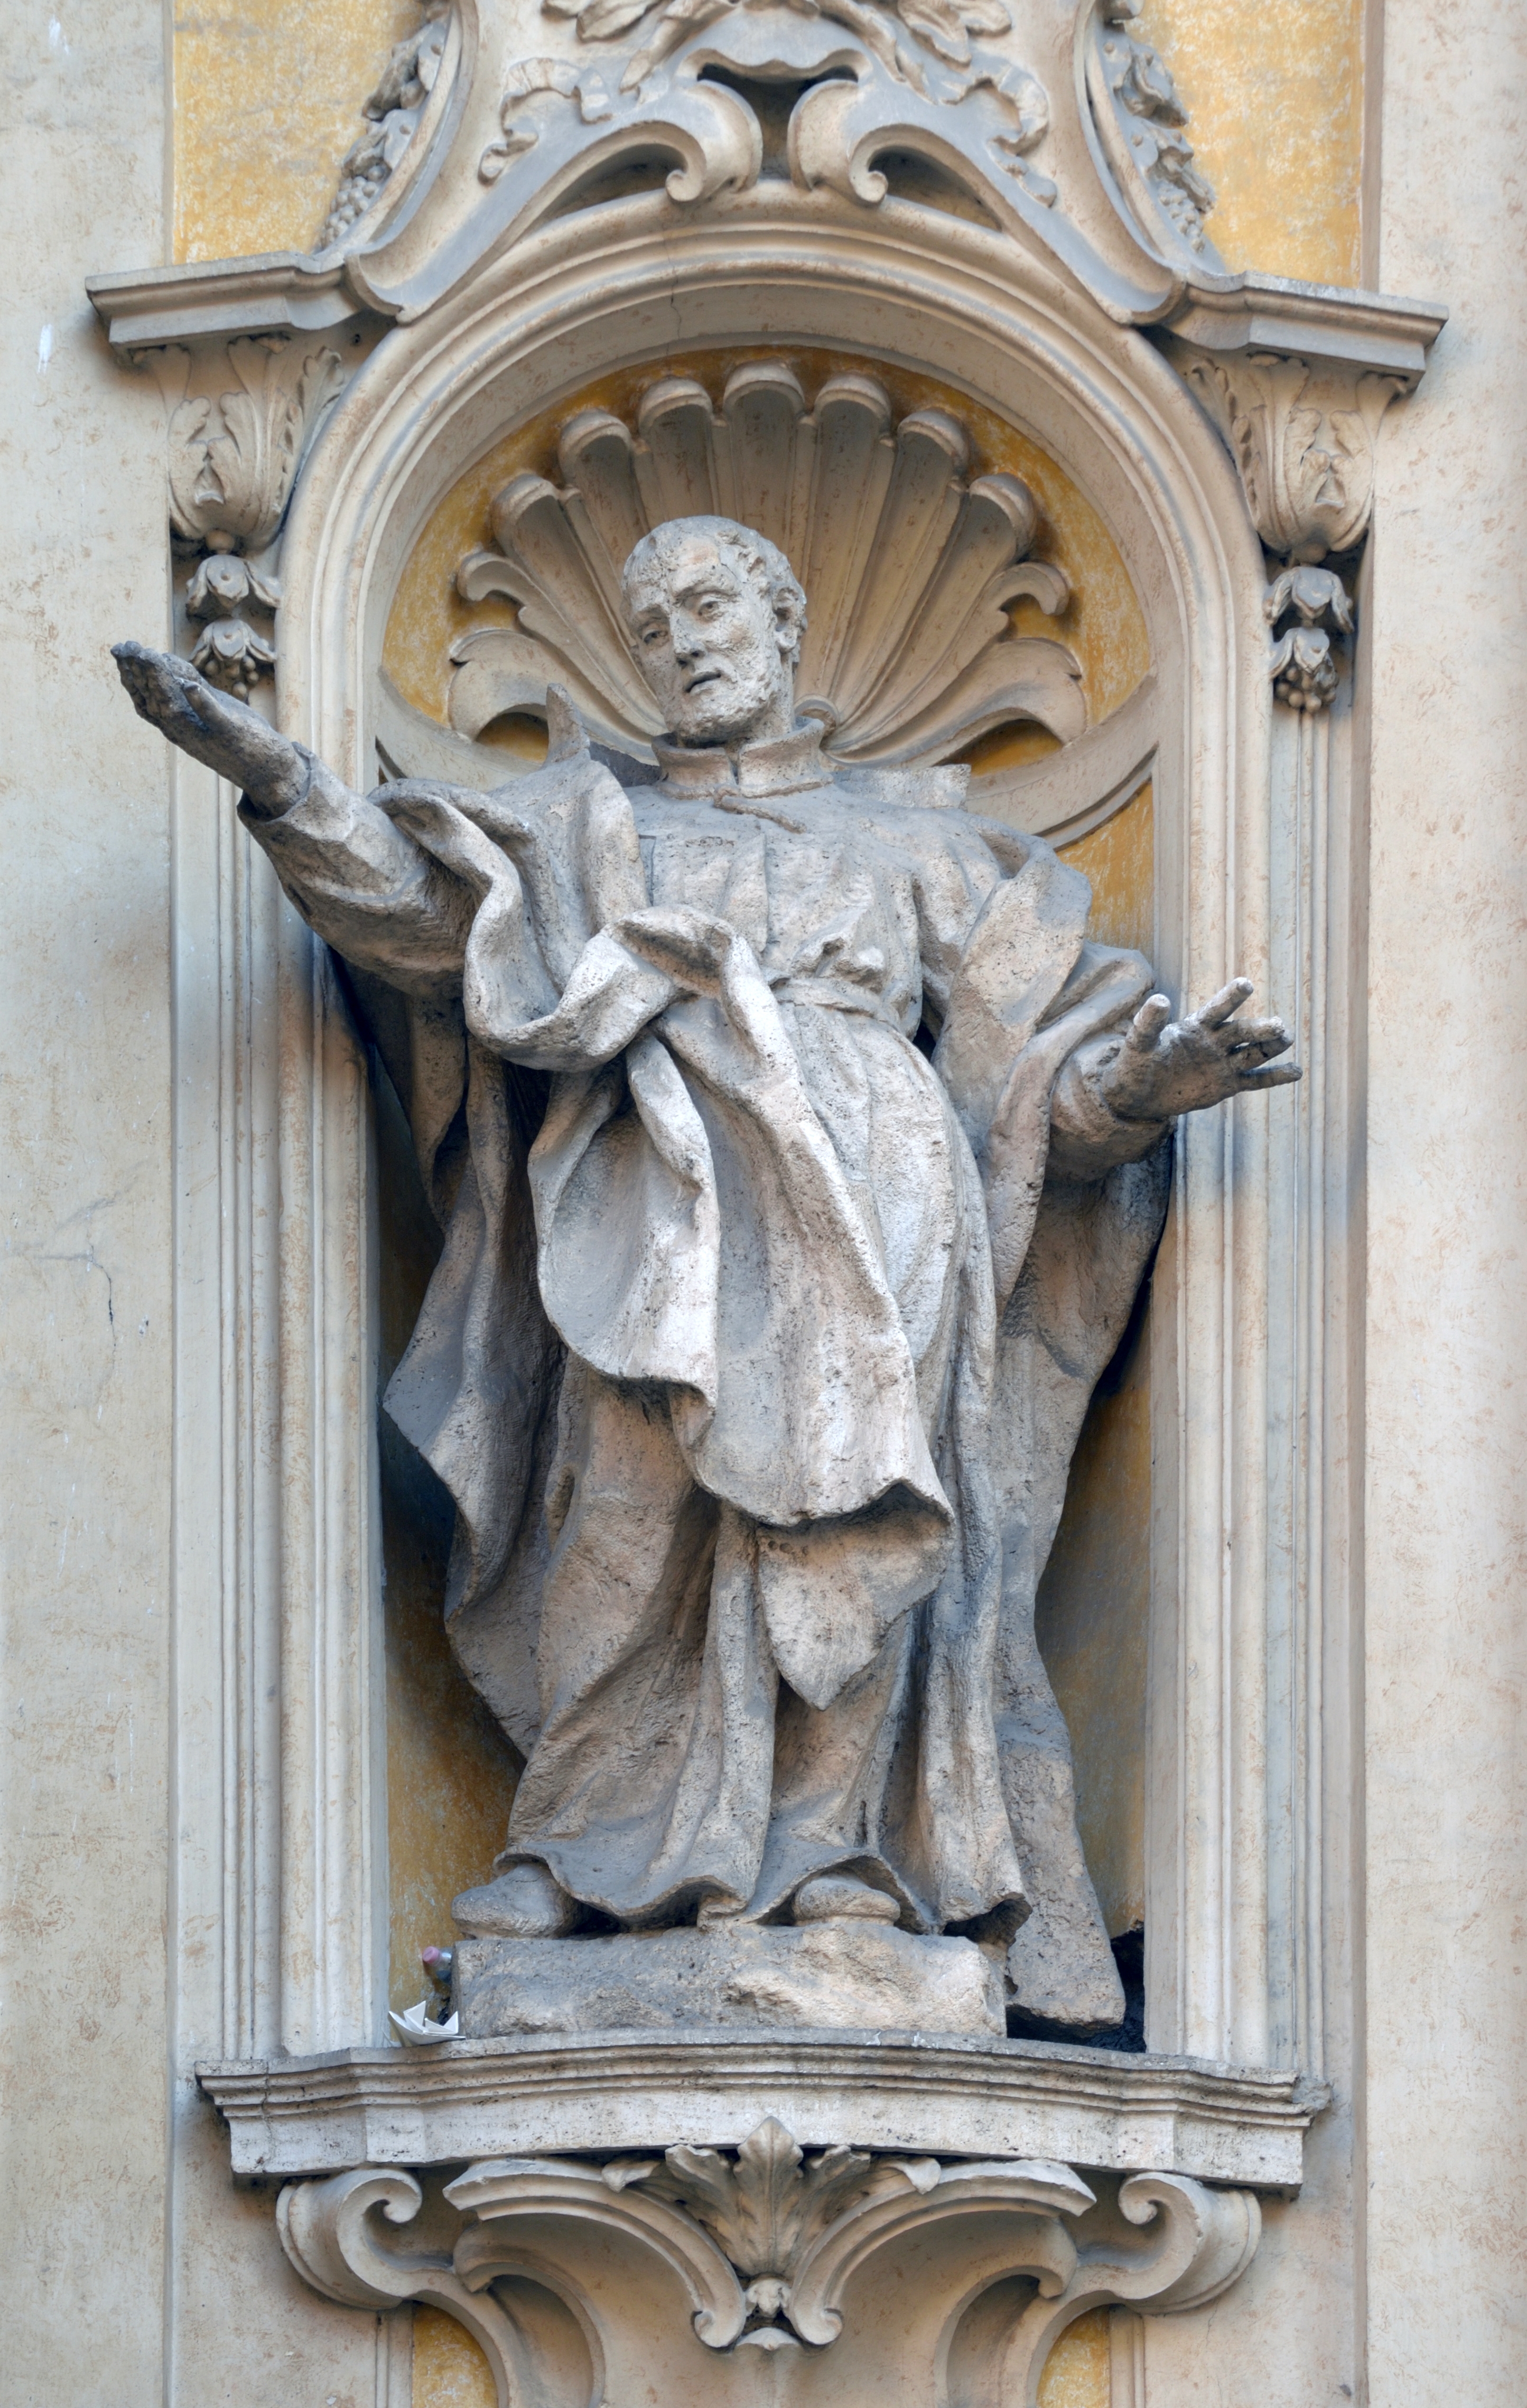 Statue of S. Philip Neri in facade of church Santa Maria Maddalena